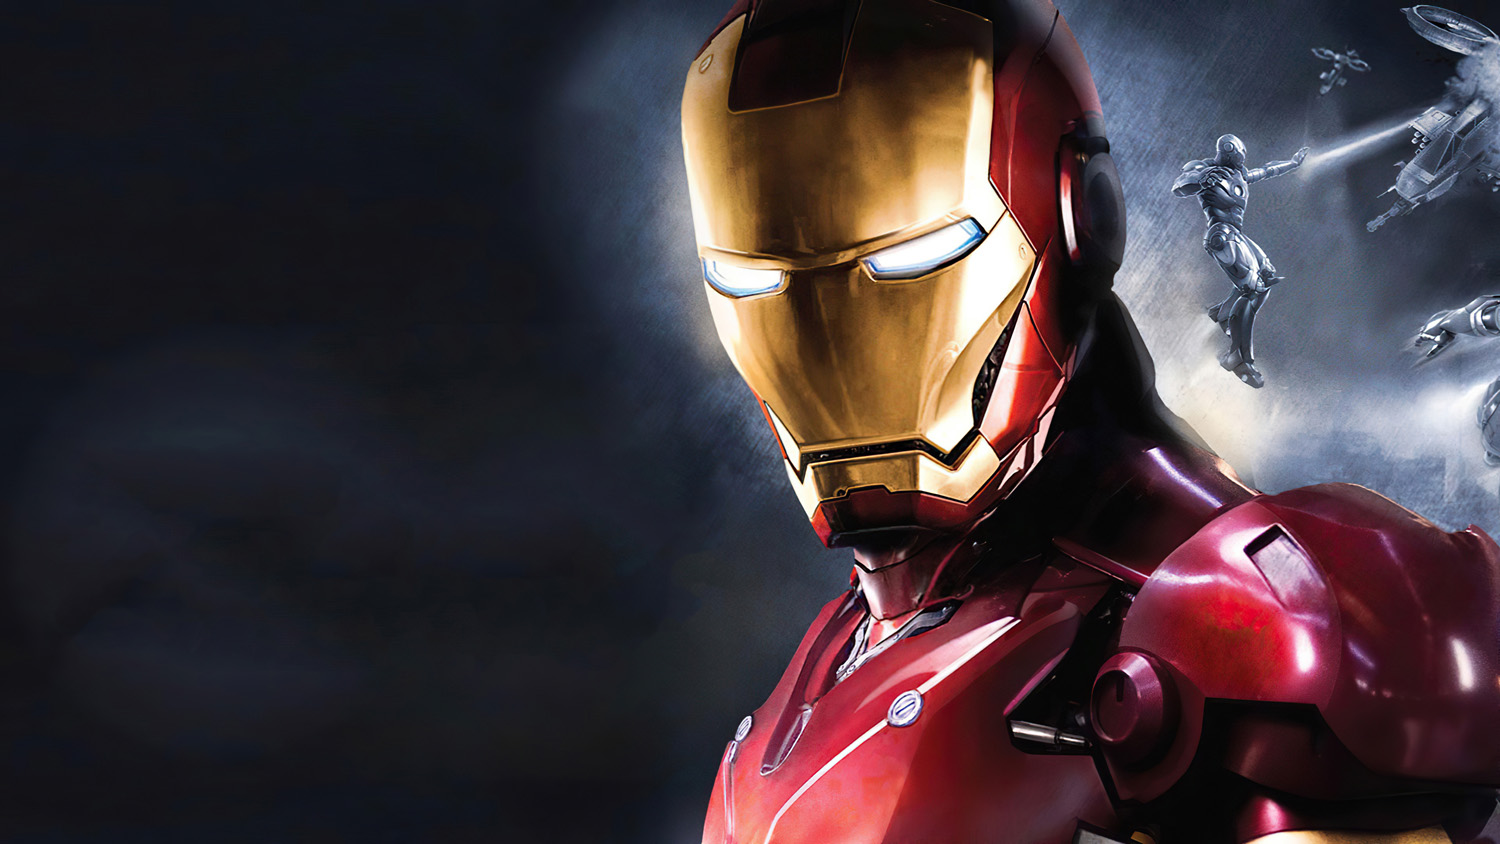 Poster A5 Dán Tường Marvel, Decal 15X21 Trang Trí Có Keo Iron Man - Mẫu 5,  Nhận In Theo Yêu Cầu | Lazada.Vn